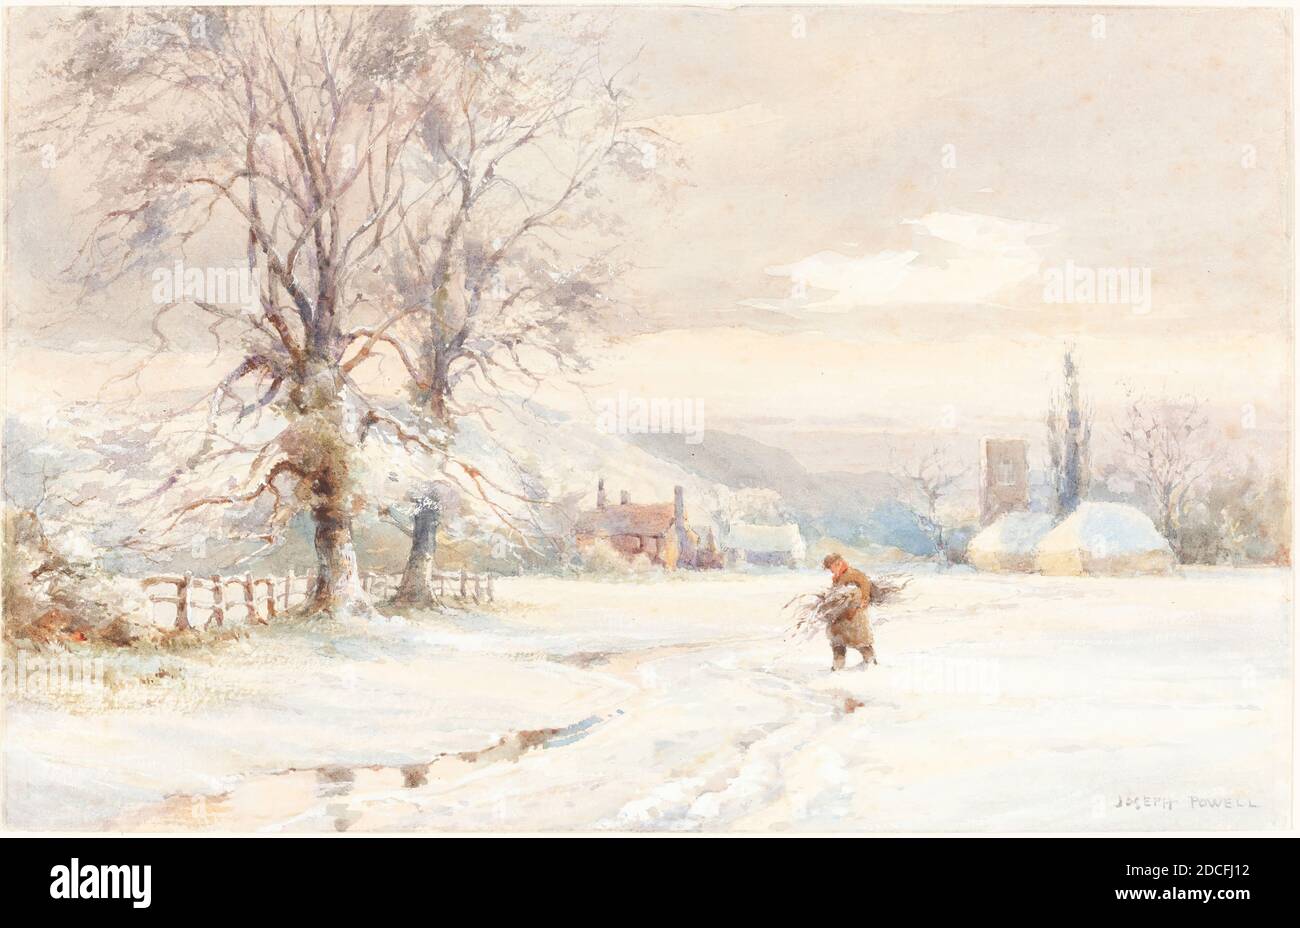 Joseph Rubens Powell, (artiste), Britannique, active 1835/1871, hiver, aquarelle et gouache sur graphite sur papier vélin, total: 18 x 28.2 cm (7 1/16 x 11 1/8 po Banque D'Images